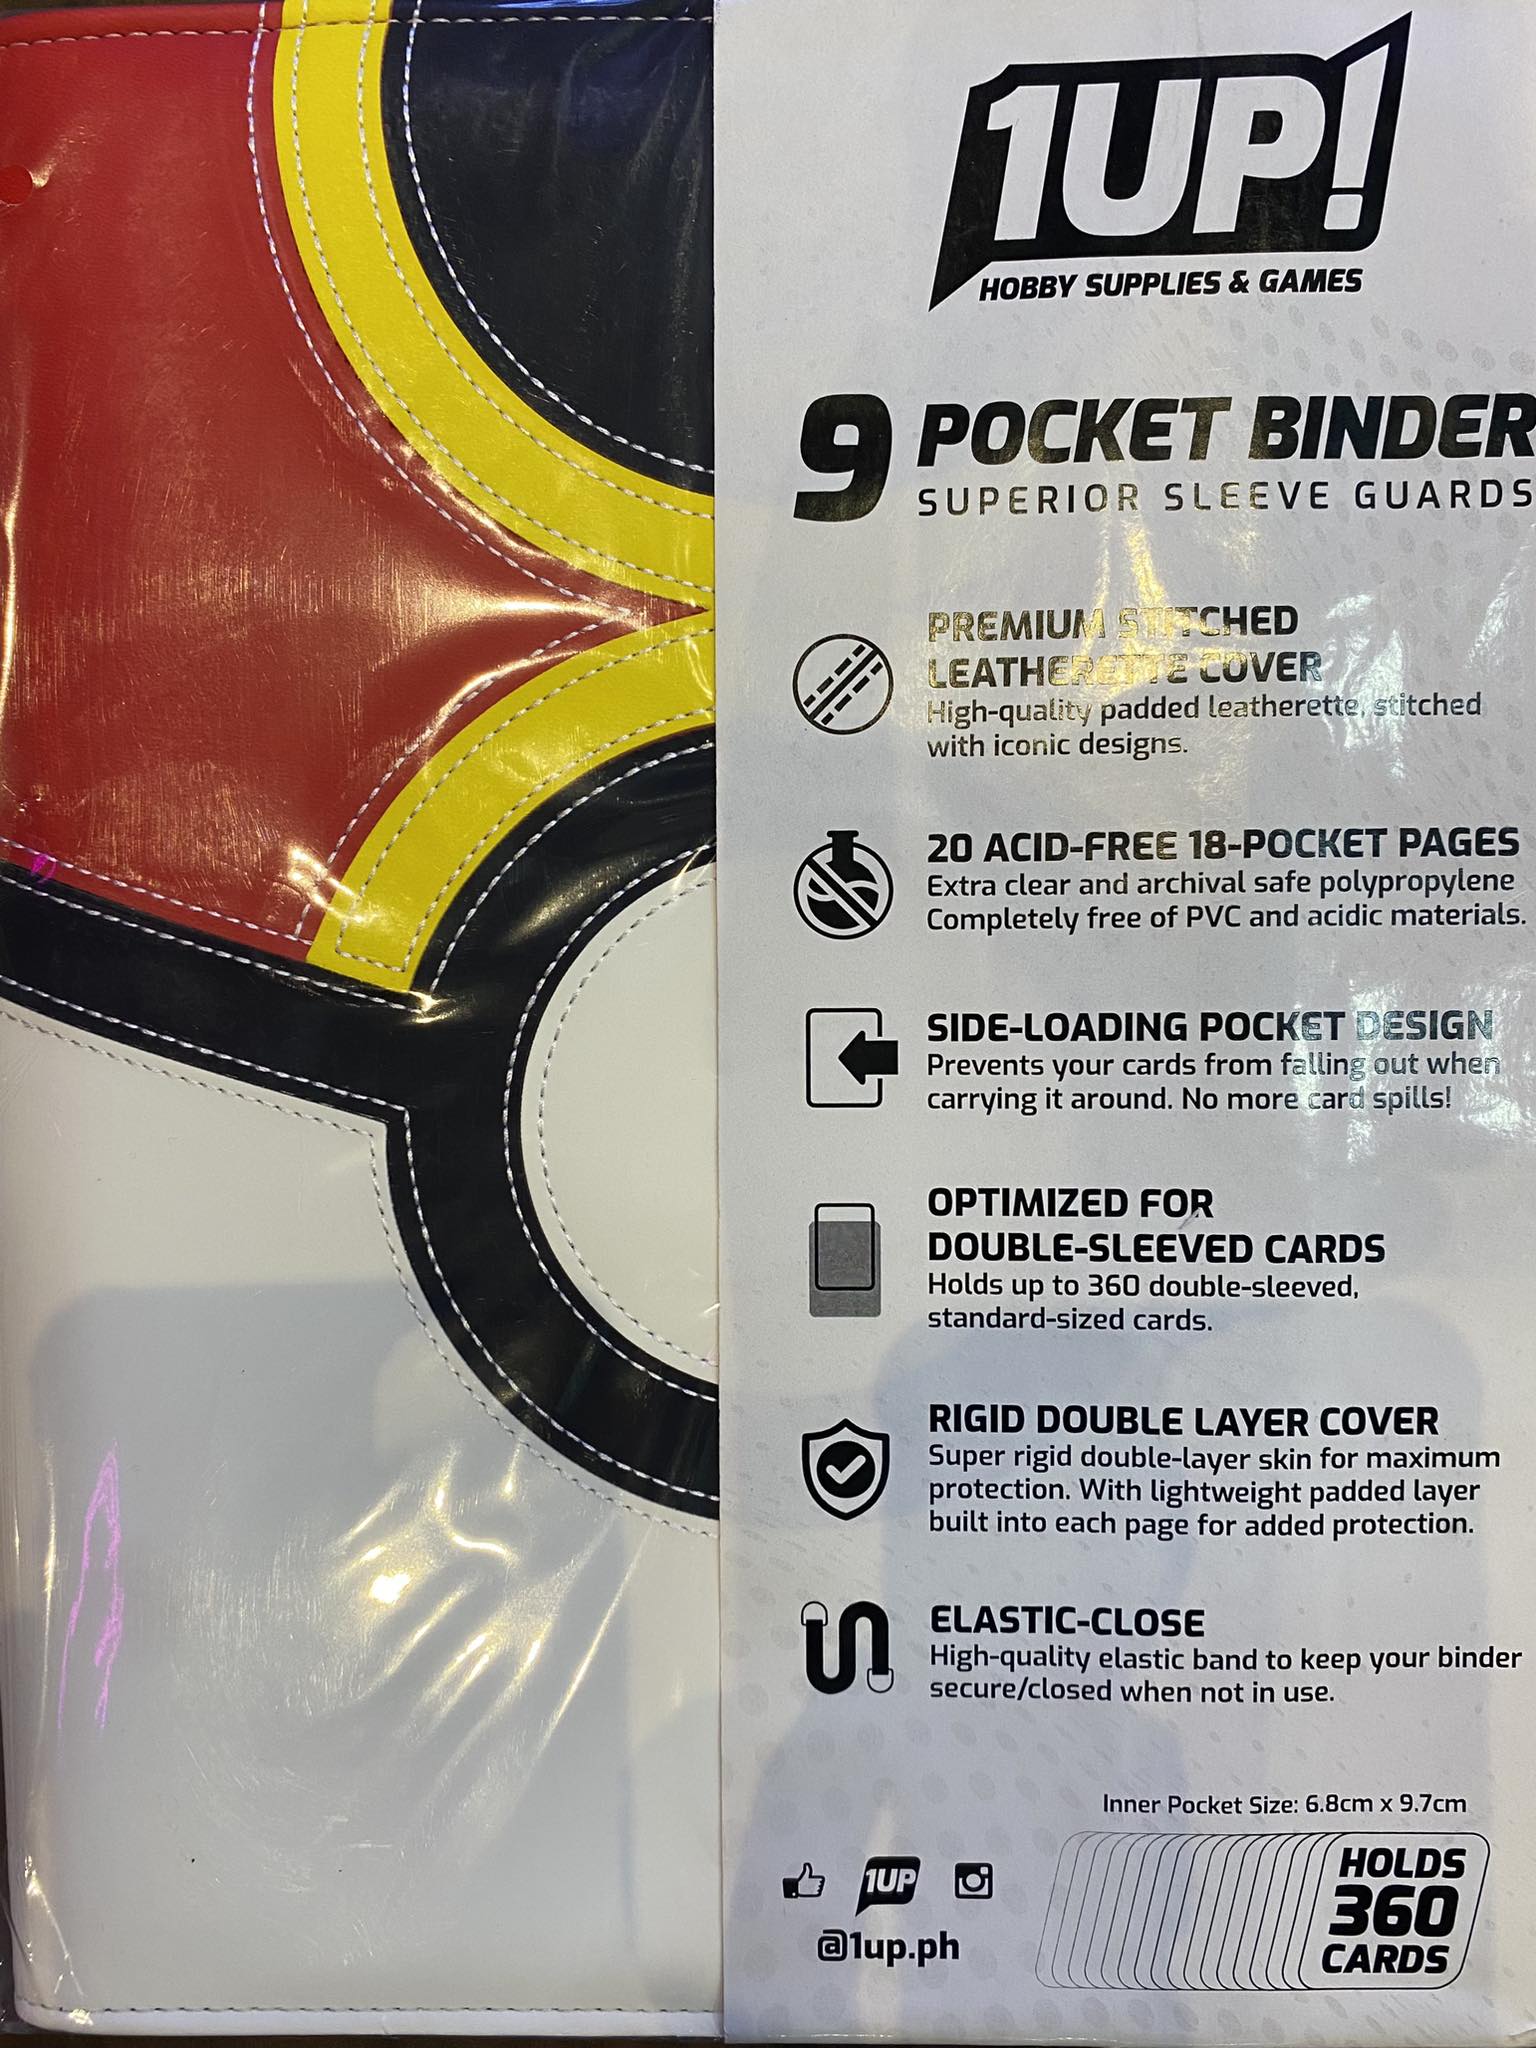 1UP – 9 Pocket Binder – Repeat Ball